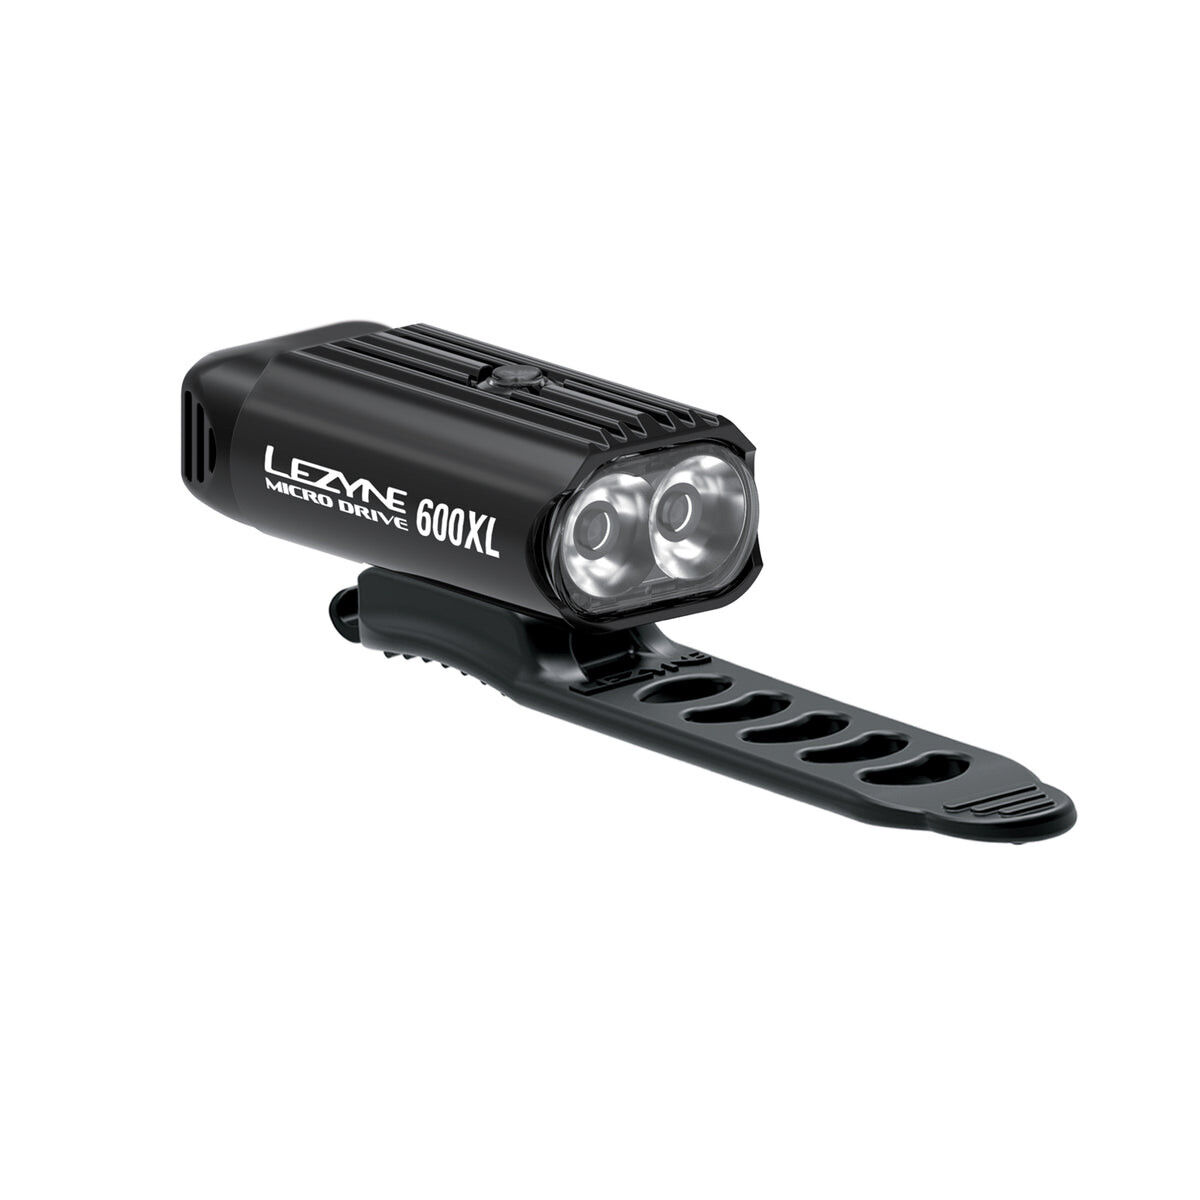 Lezyne Micro Drive 600XL - Zestaw lampek rowerowych | Hardloop